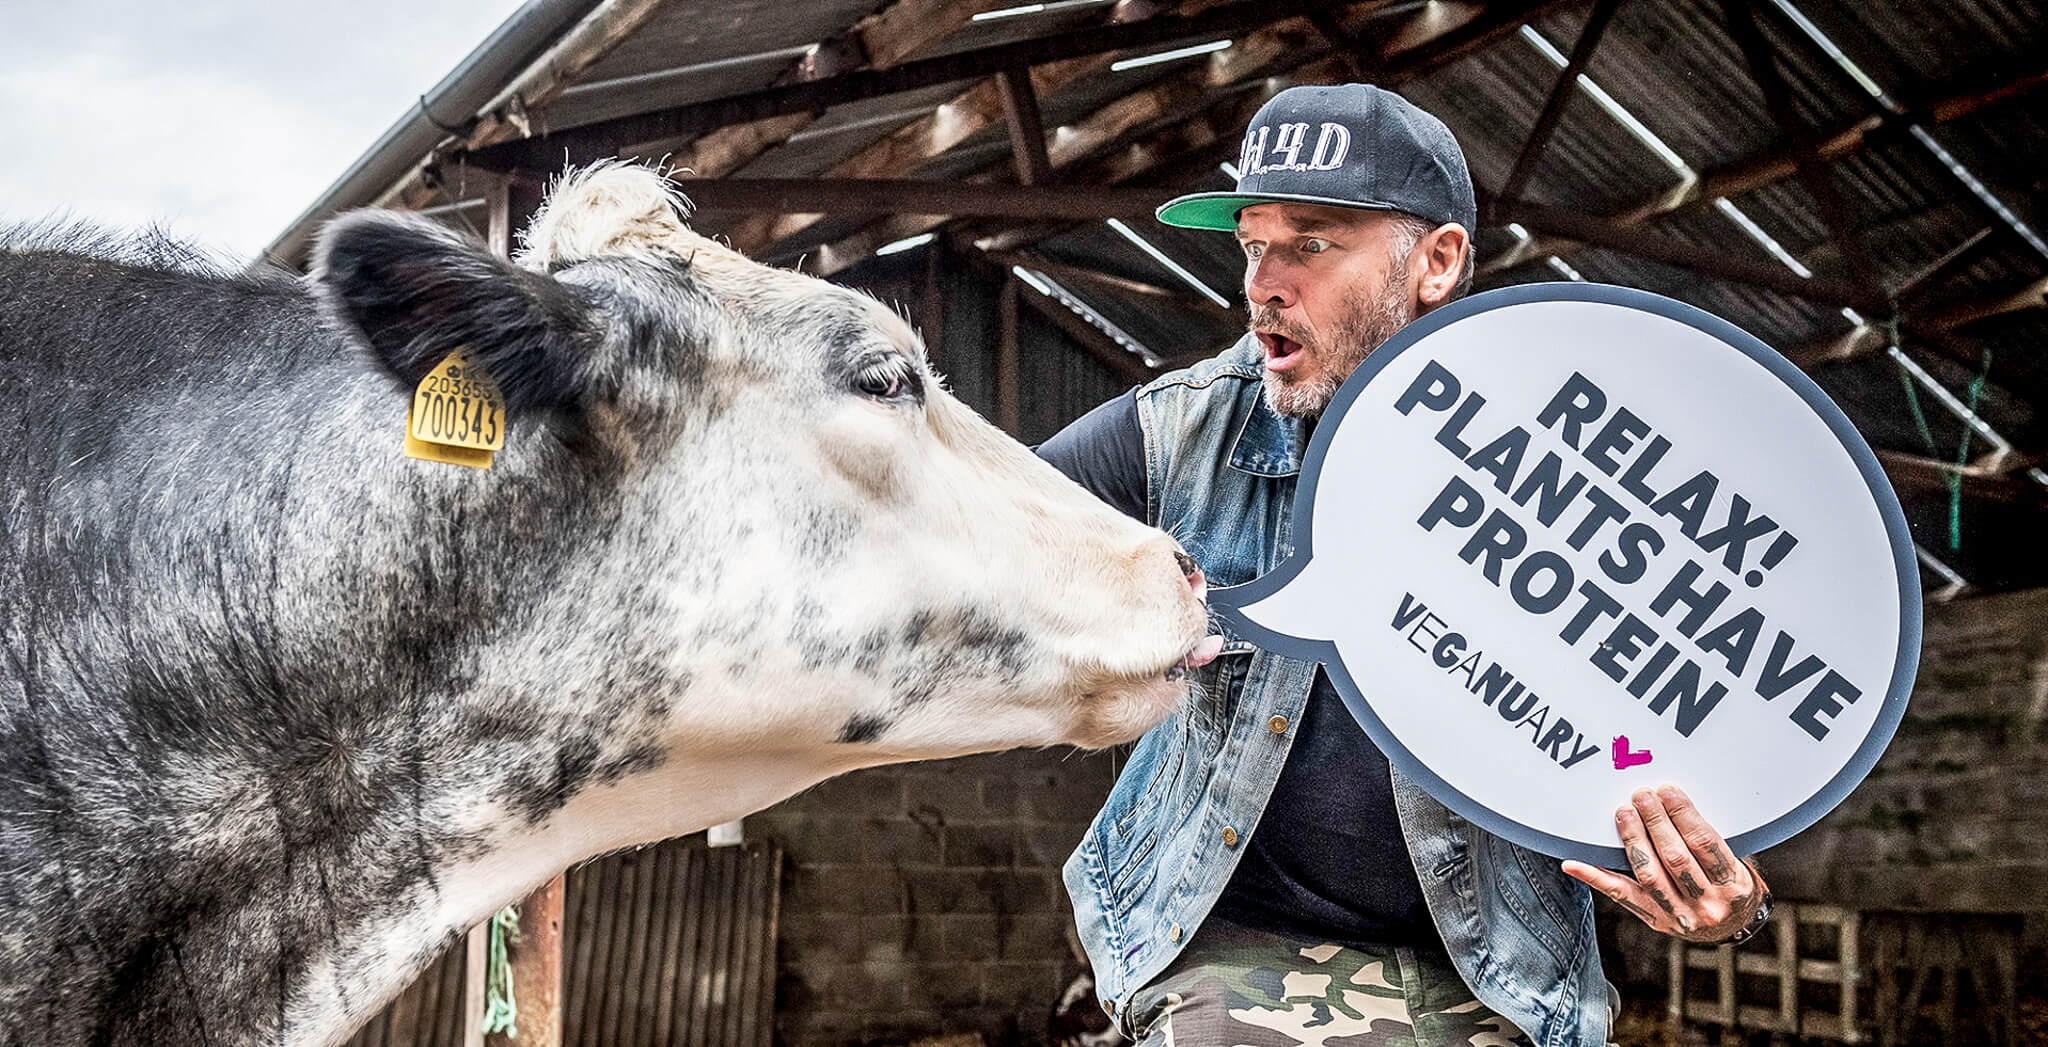 Mann streichelt Kuh und hält ein Schild mit dem Spruch "Entspann Dich, auch Pflanzen haben Proteine"